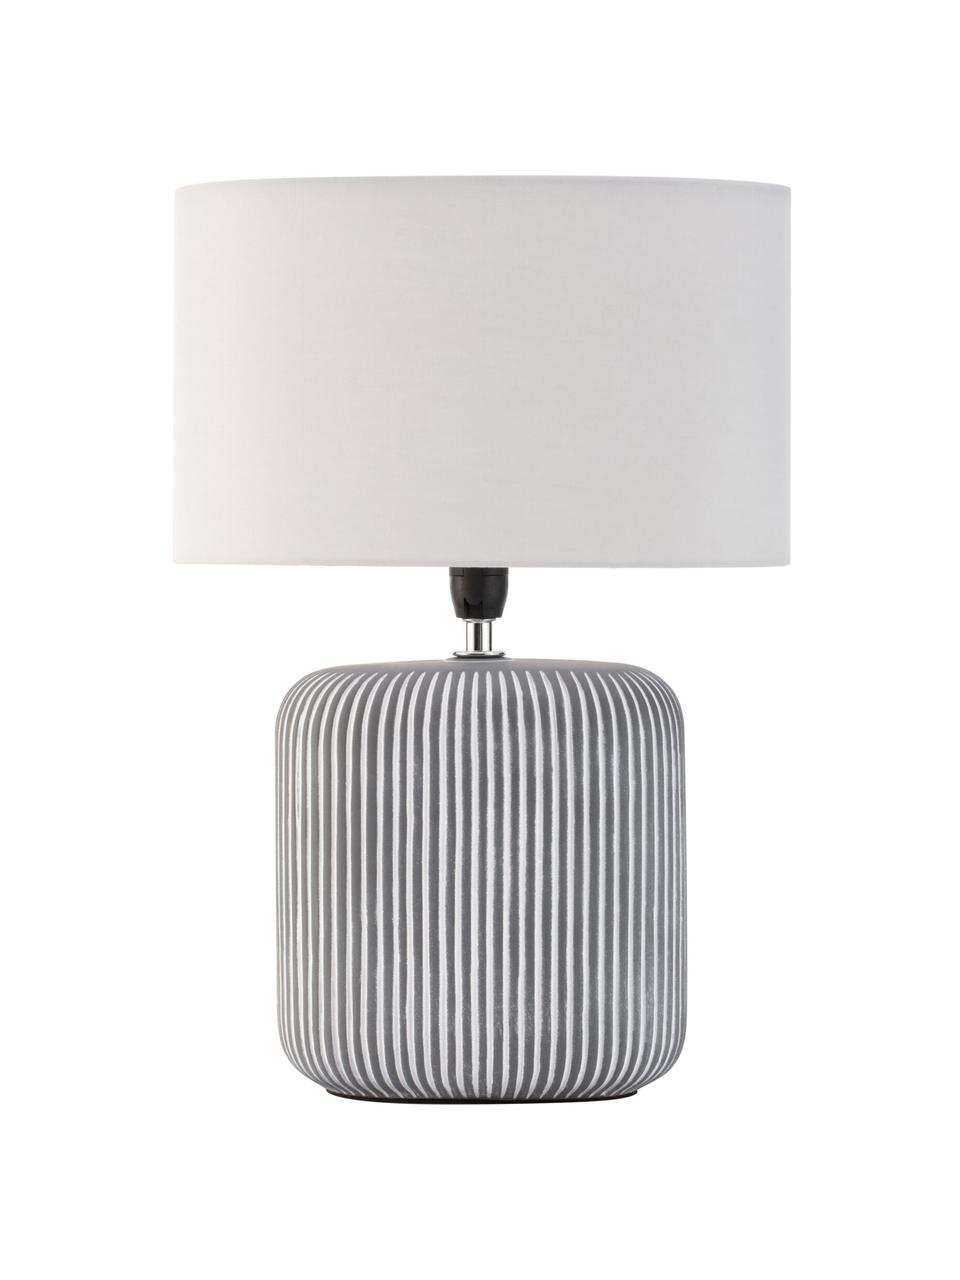 Gestreifte Ovale Keramik-Tischlampe Pure Shine, Lampenschirm: Stoff, Lampenfuß: Keramik, Weiß, Grau, Schwarz, Ø 27 x H 38 cm